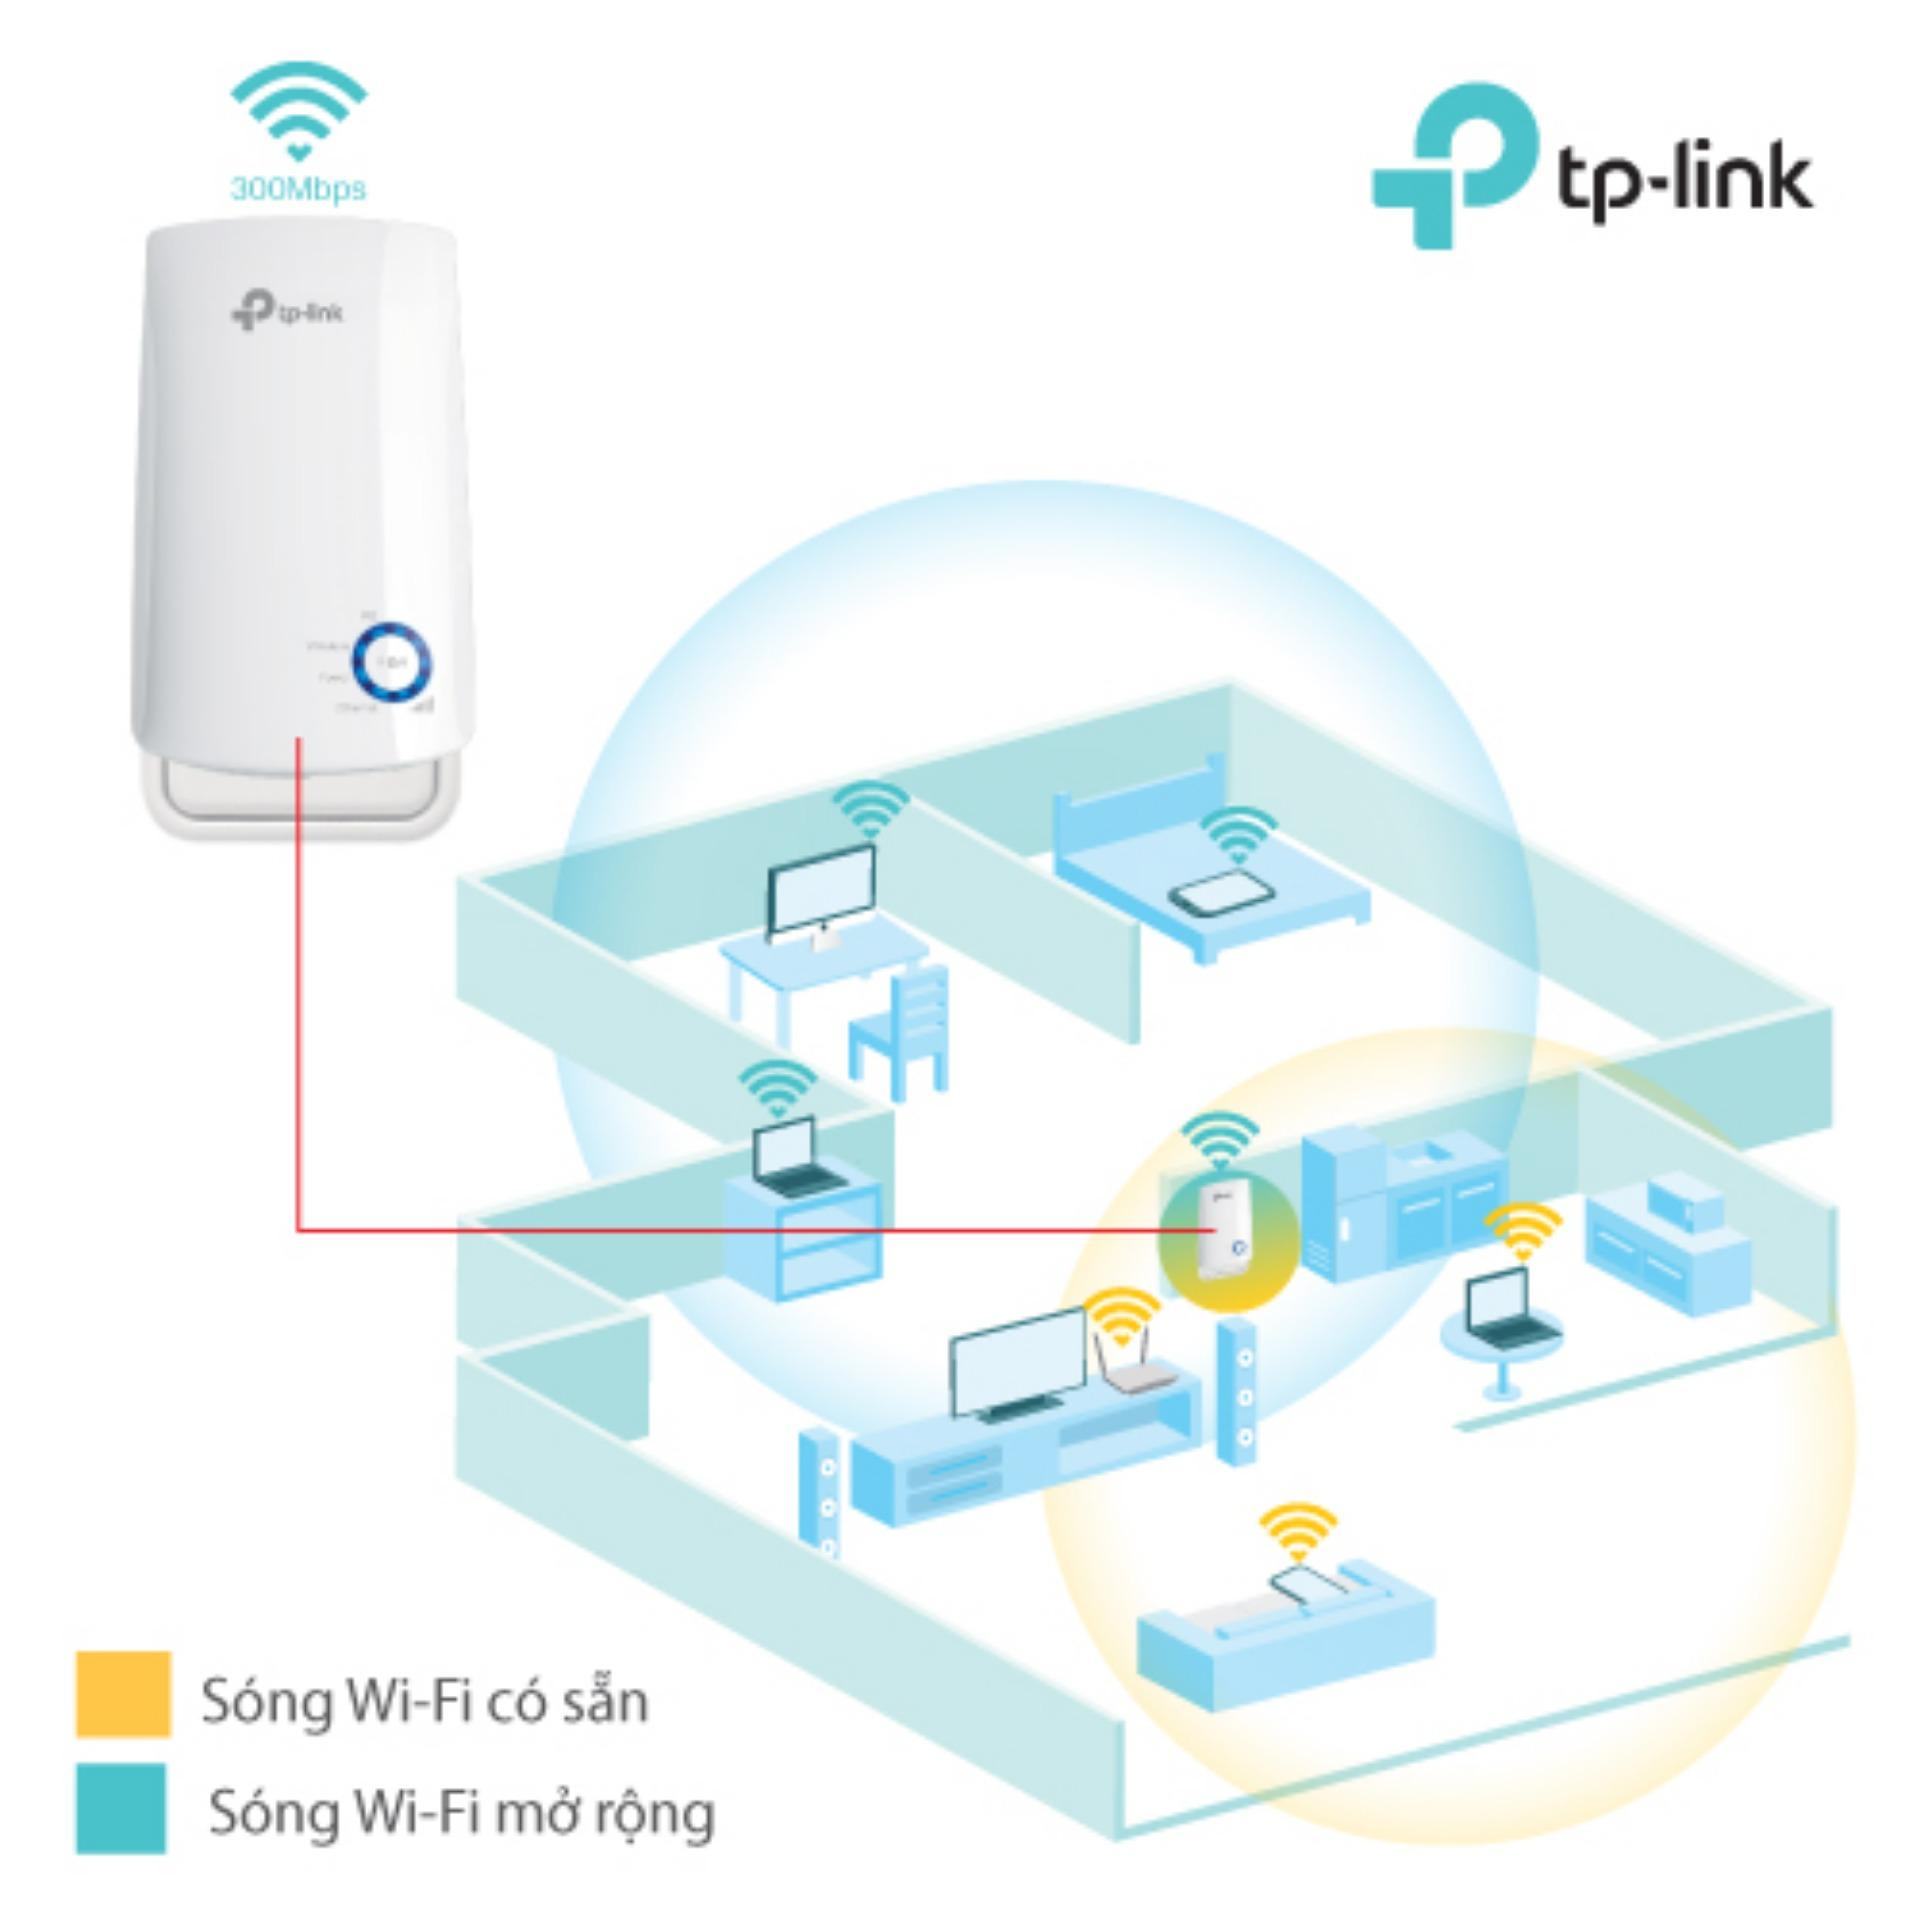 Bạn có thể cài TP-Link TL-WA850RE theo cách thủ công trên trình duyệt điện thoại hoặc máy tính